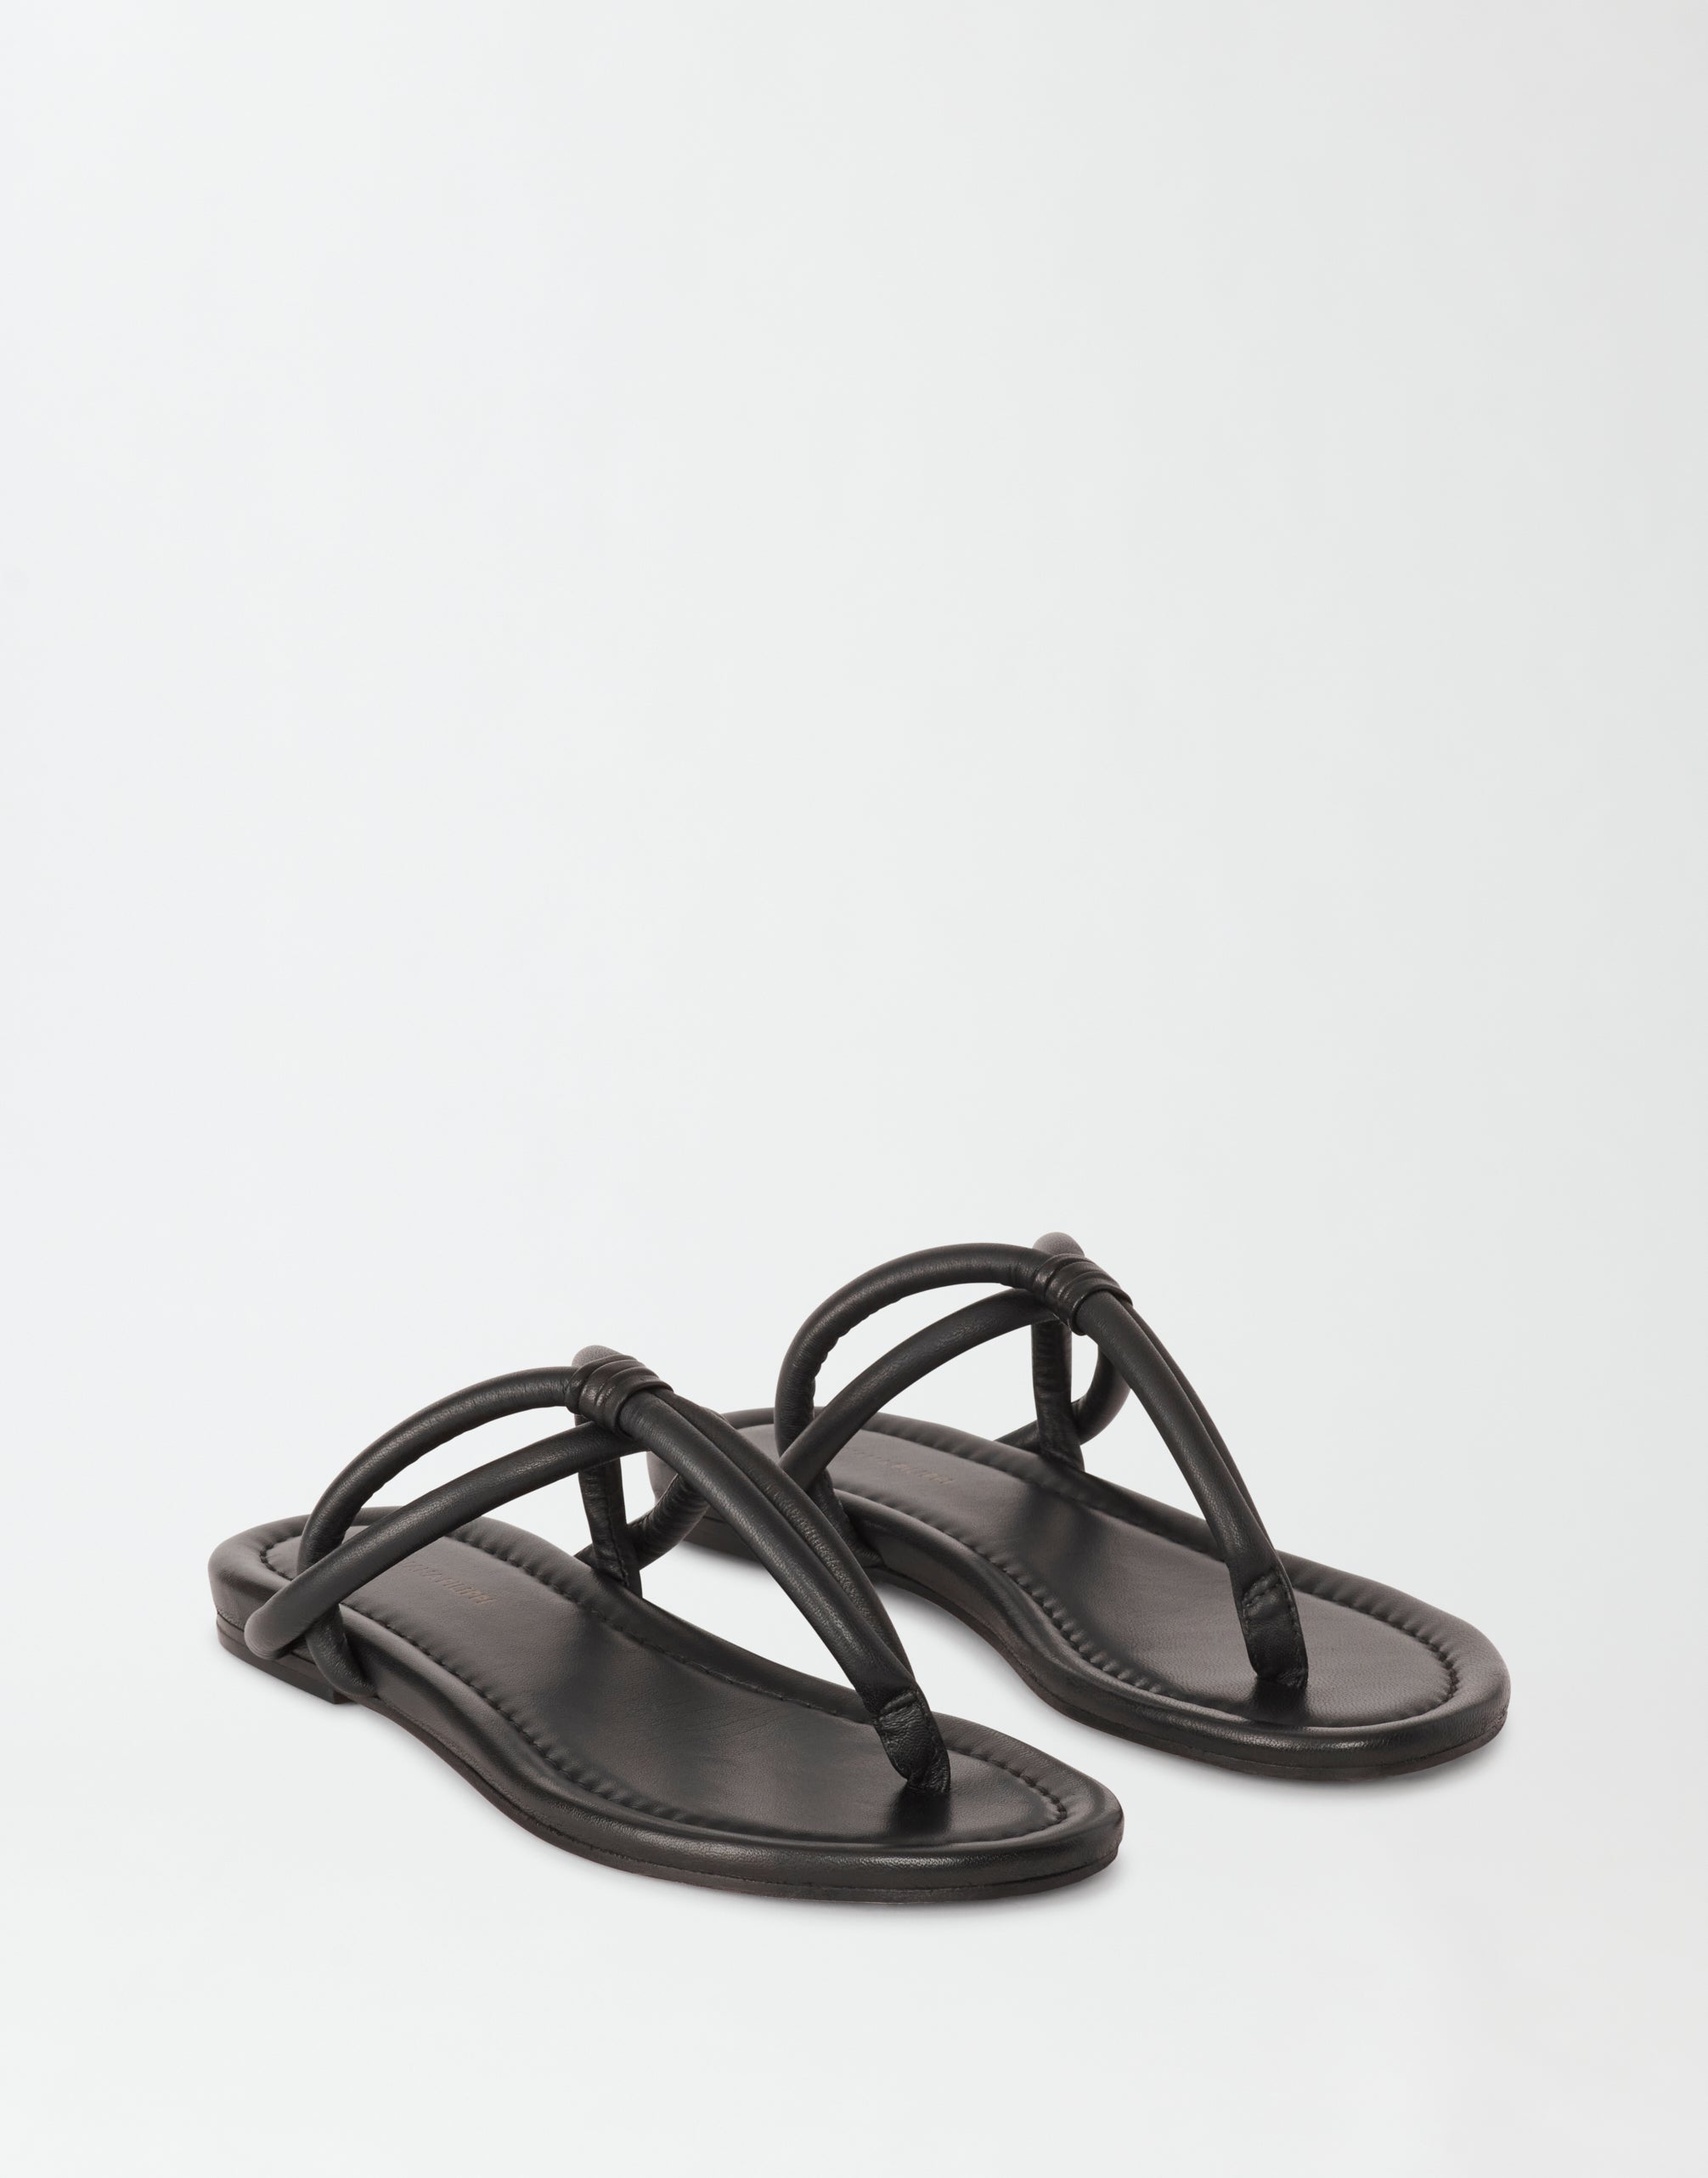 Padded flip-flop, black